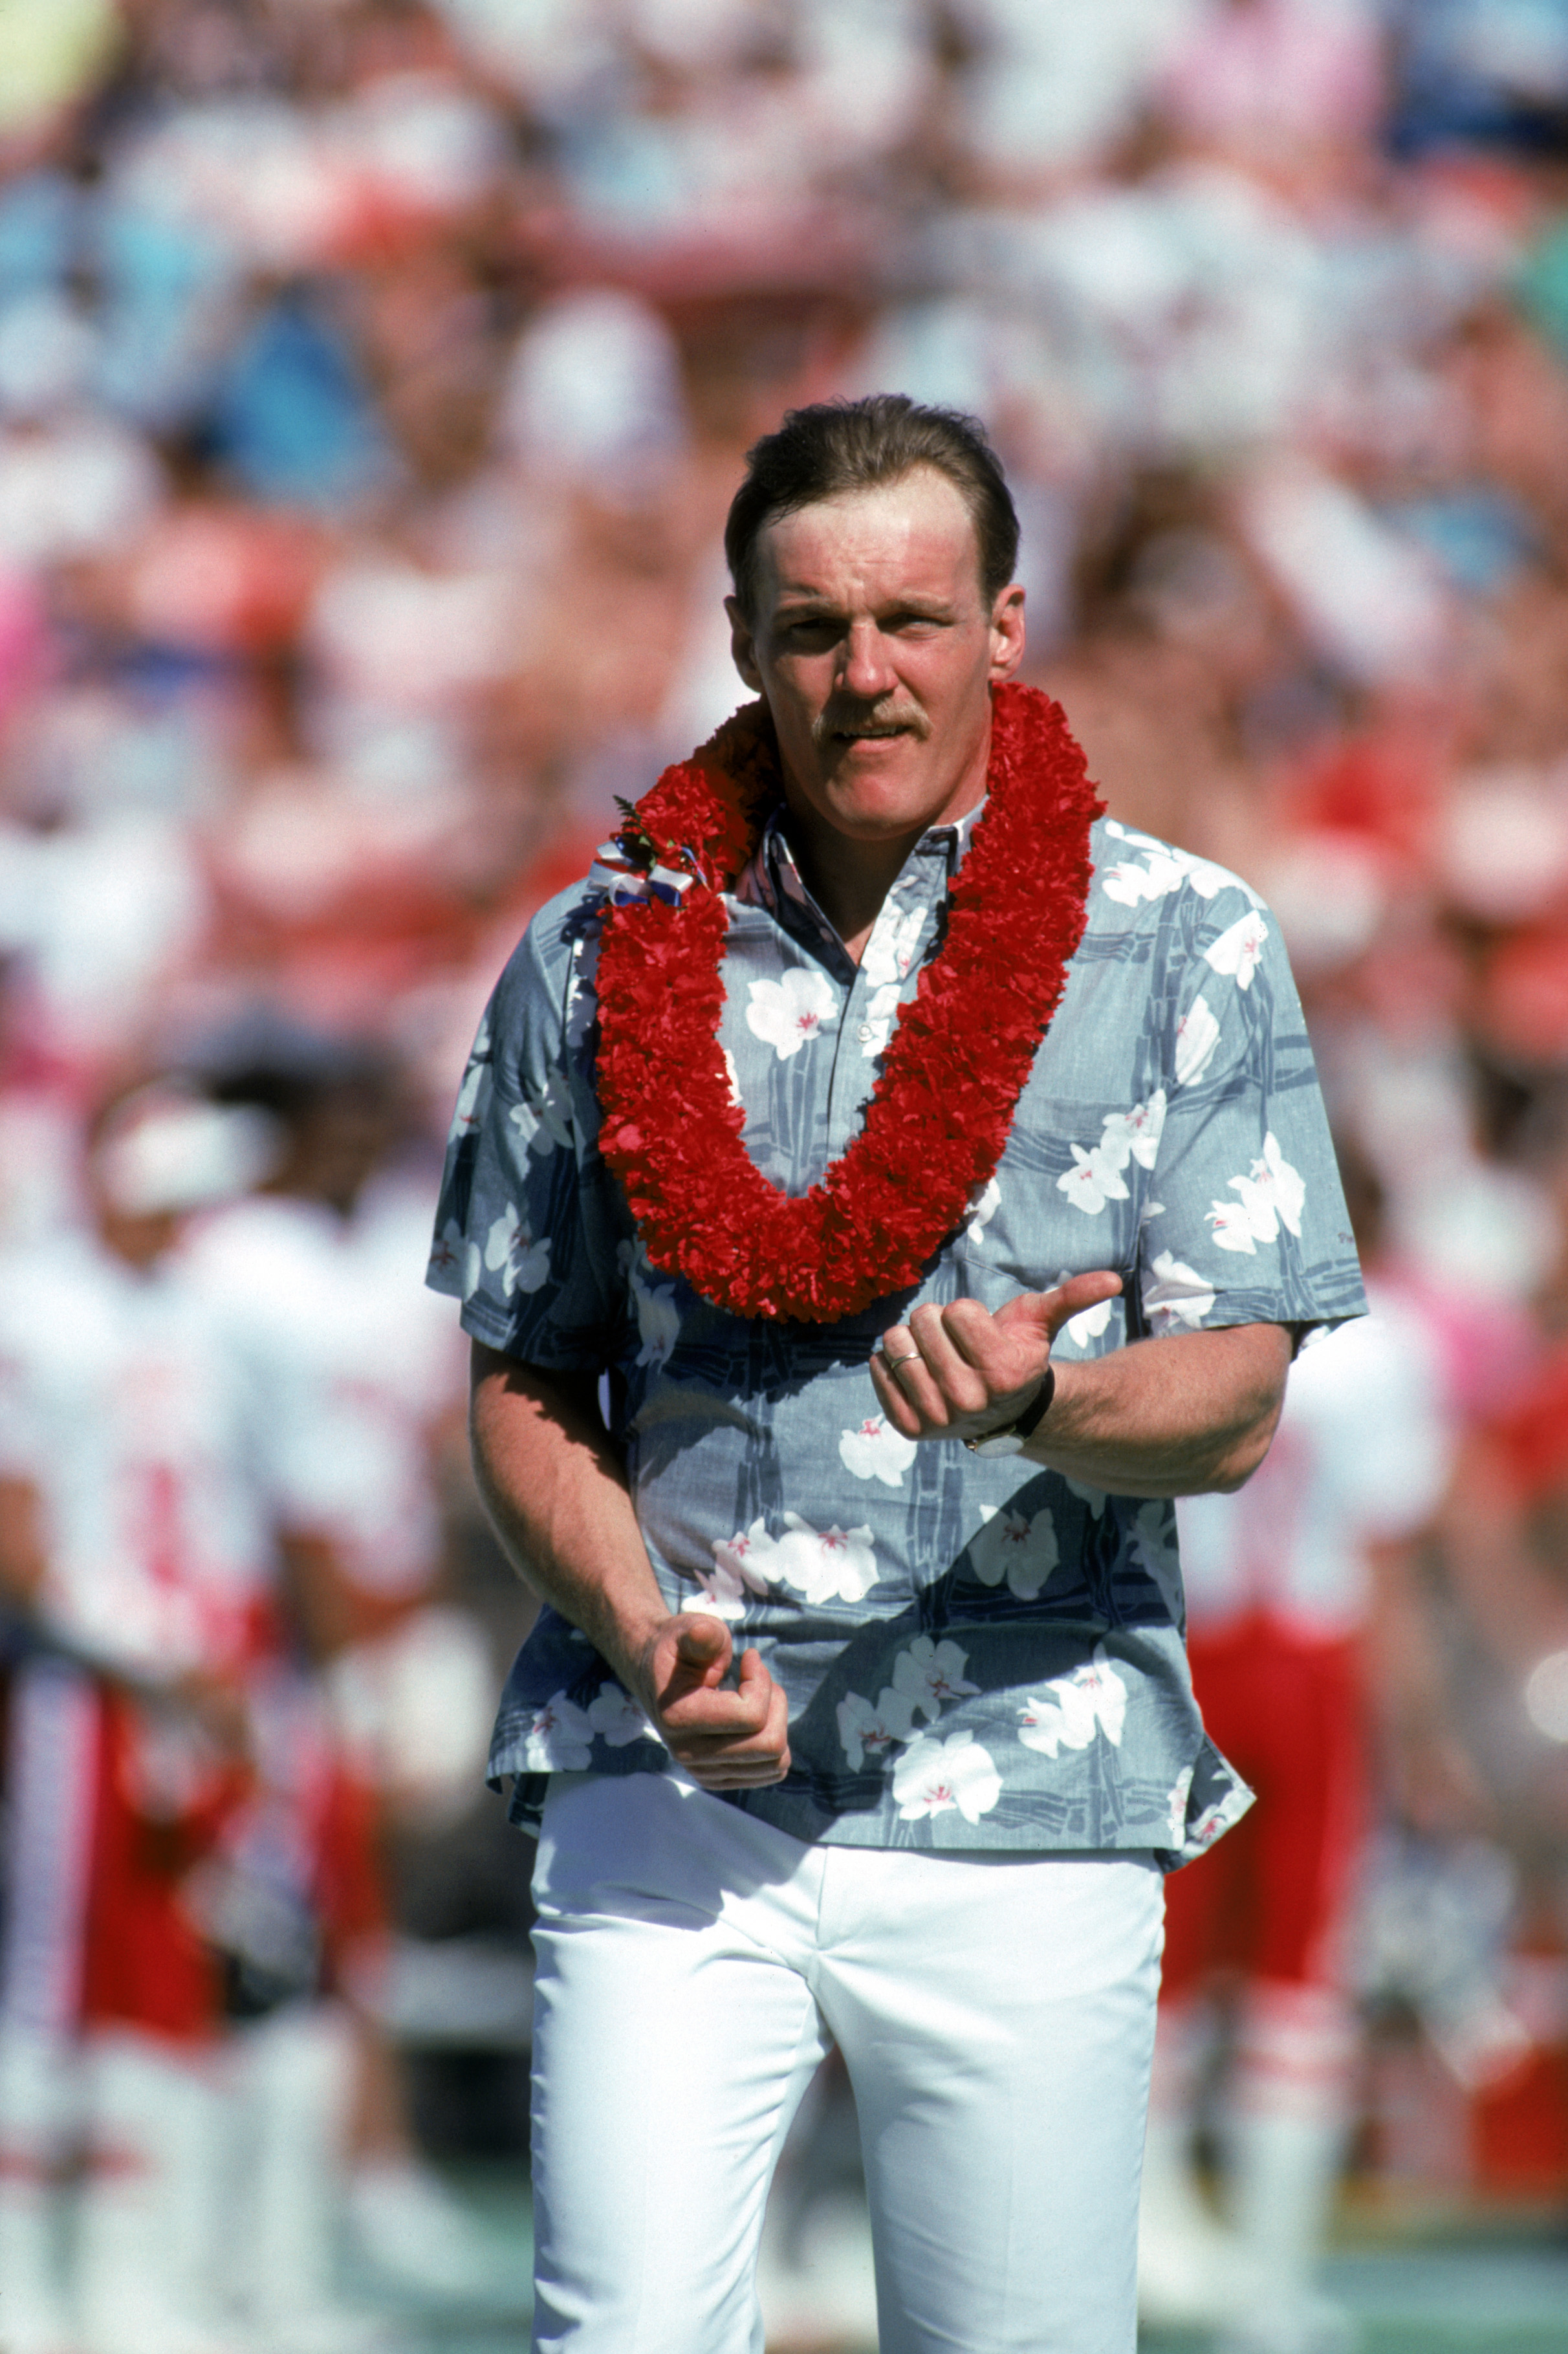 Jack Lambert Accepts An Award At The Pro Bowl In Hawaii